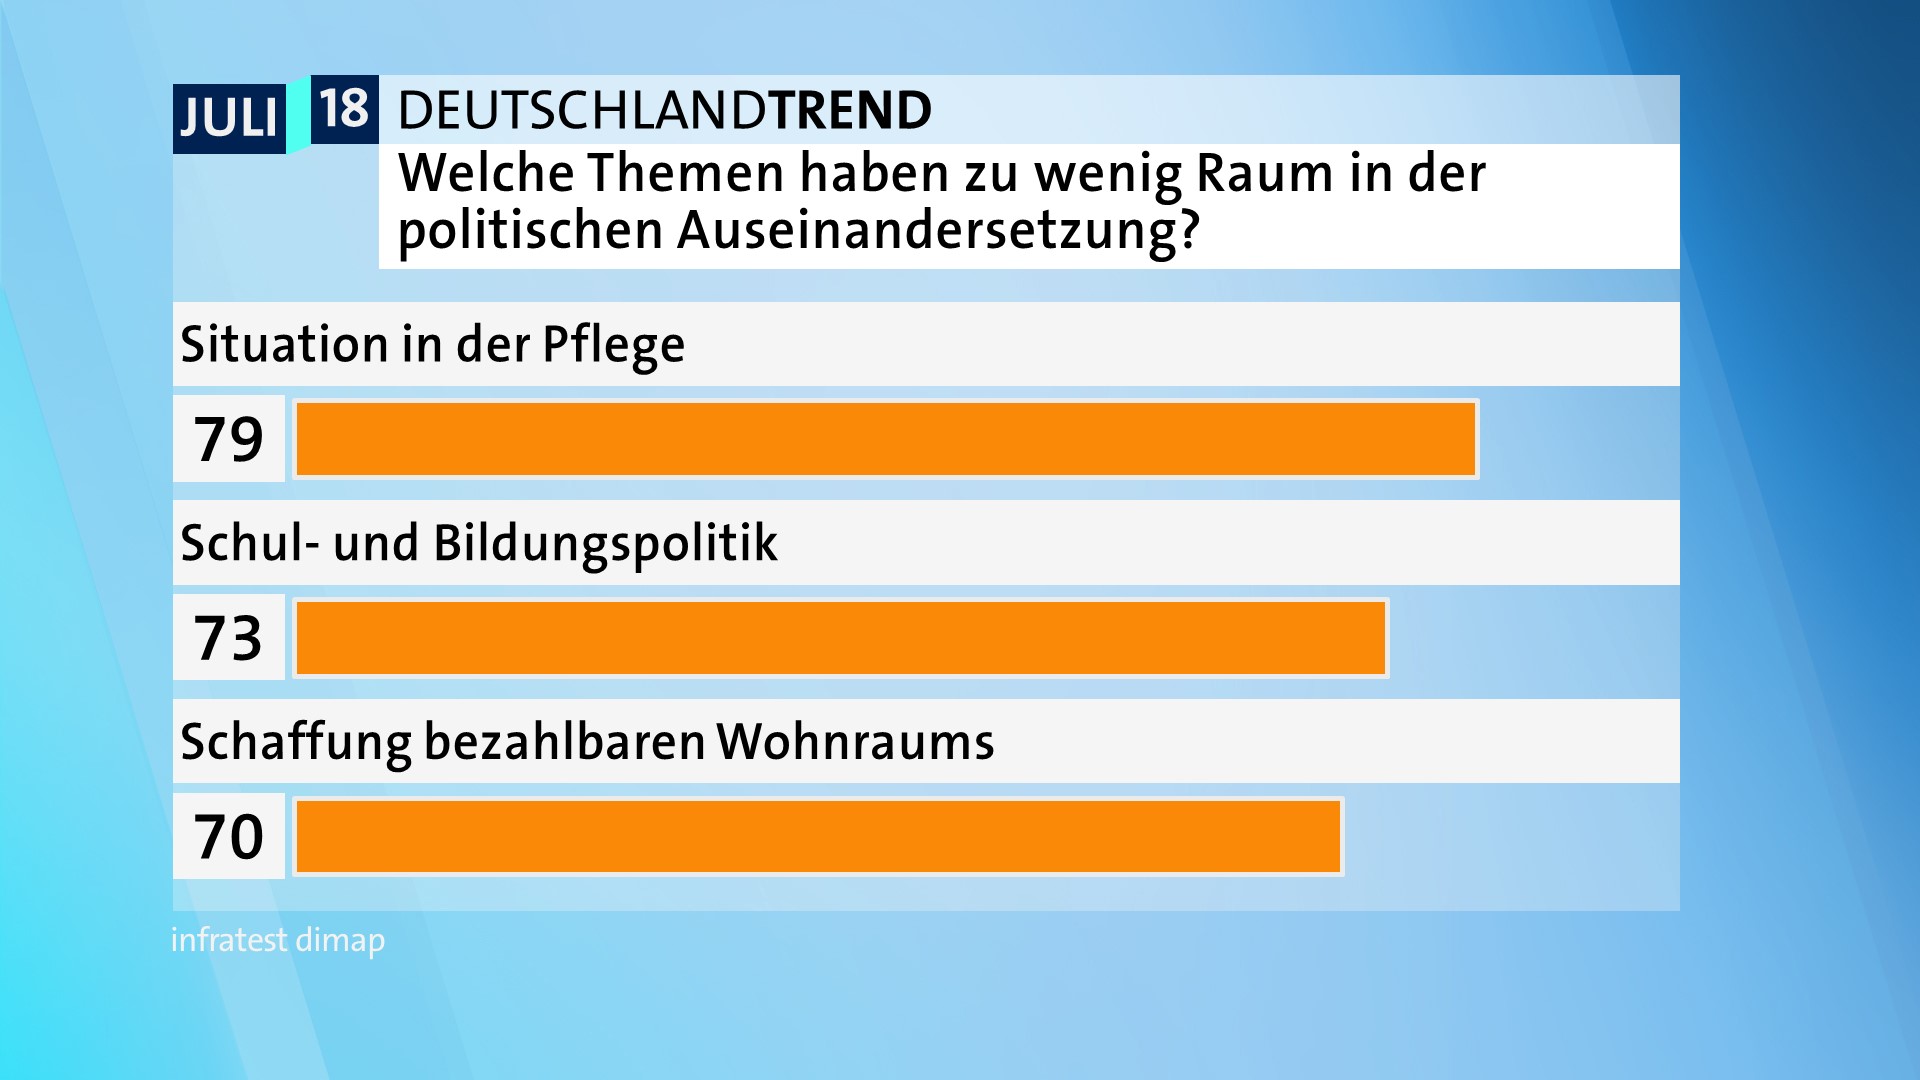 DeutschlandTrend: Welche Themen haben zuwenig Raum in der Politik